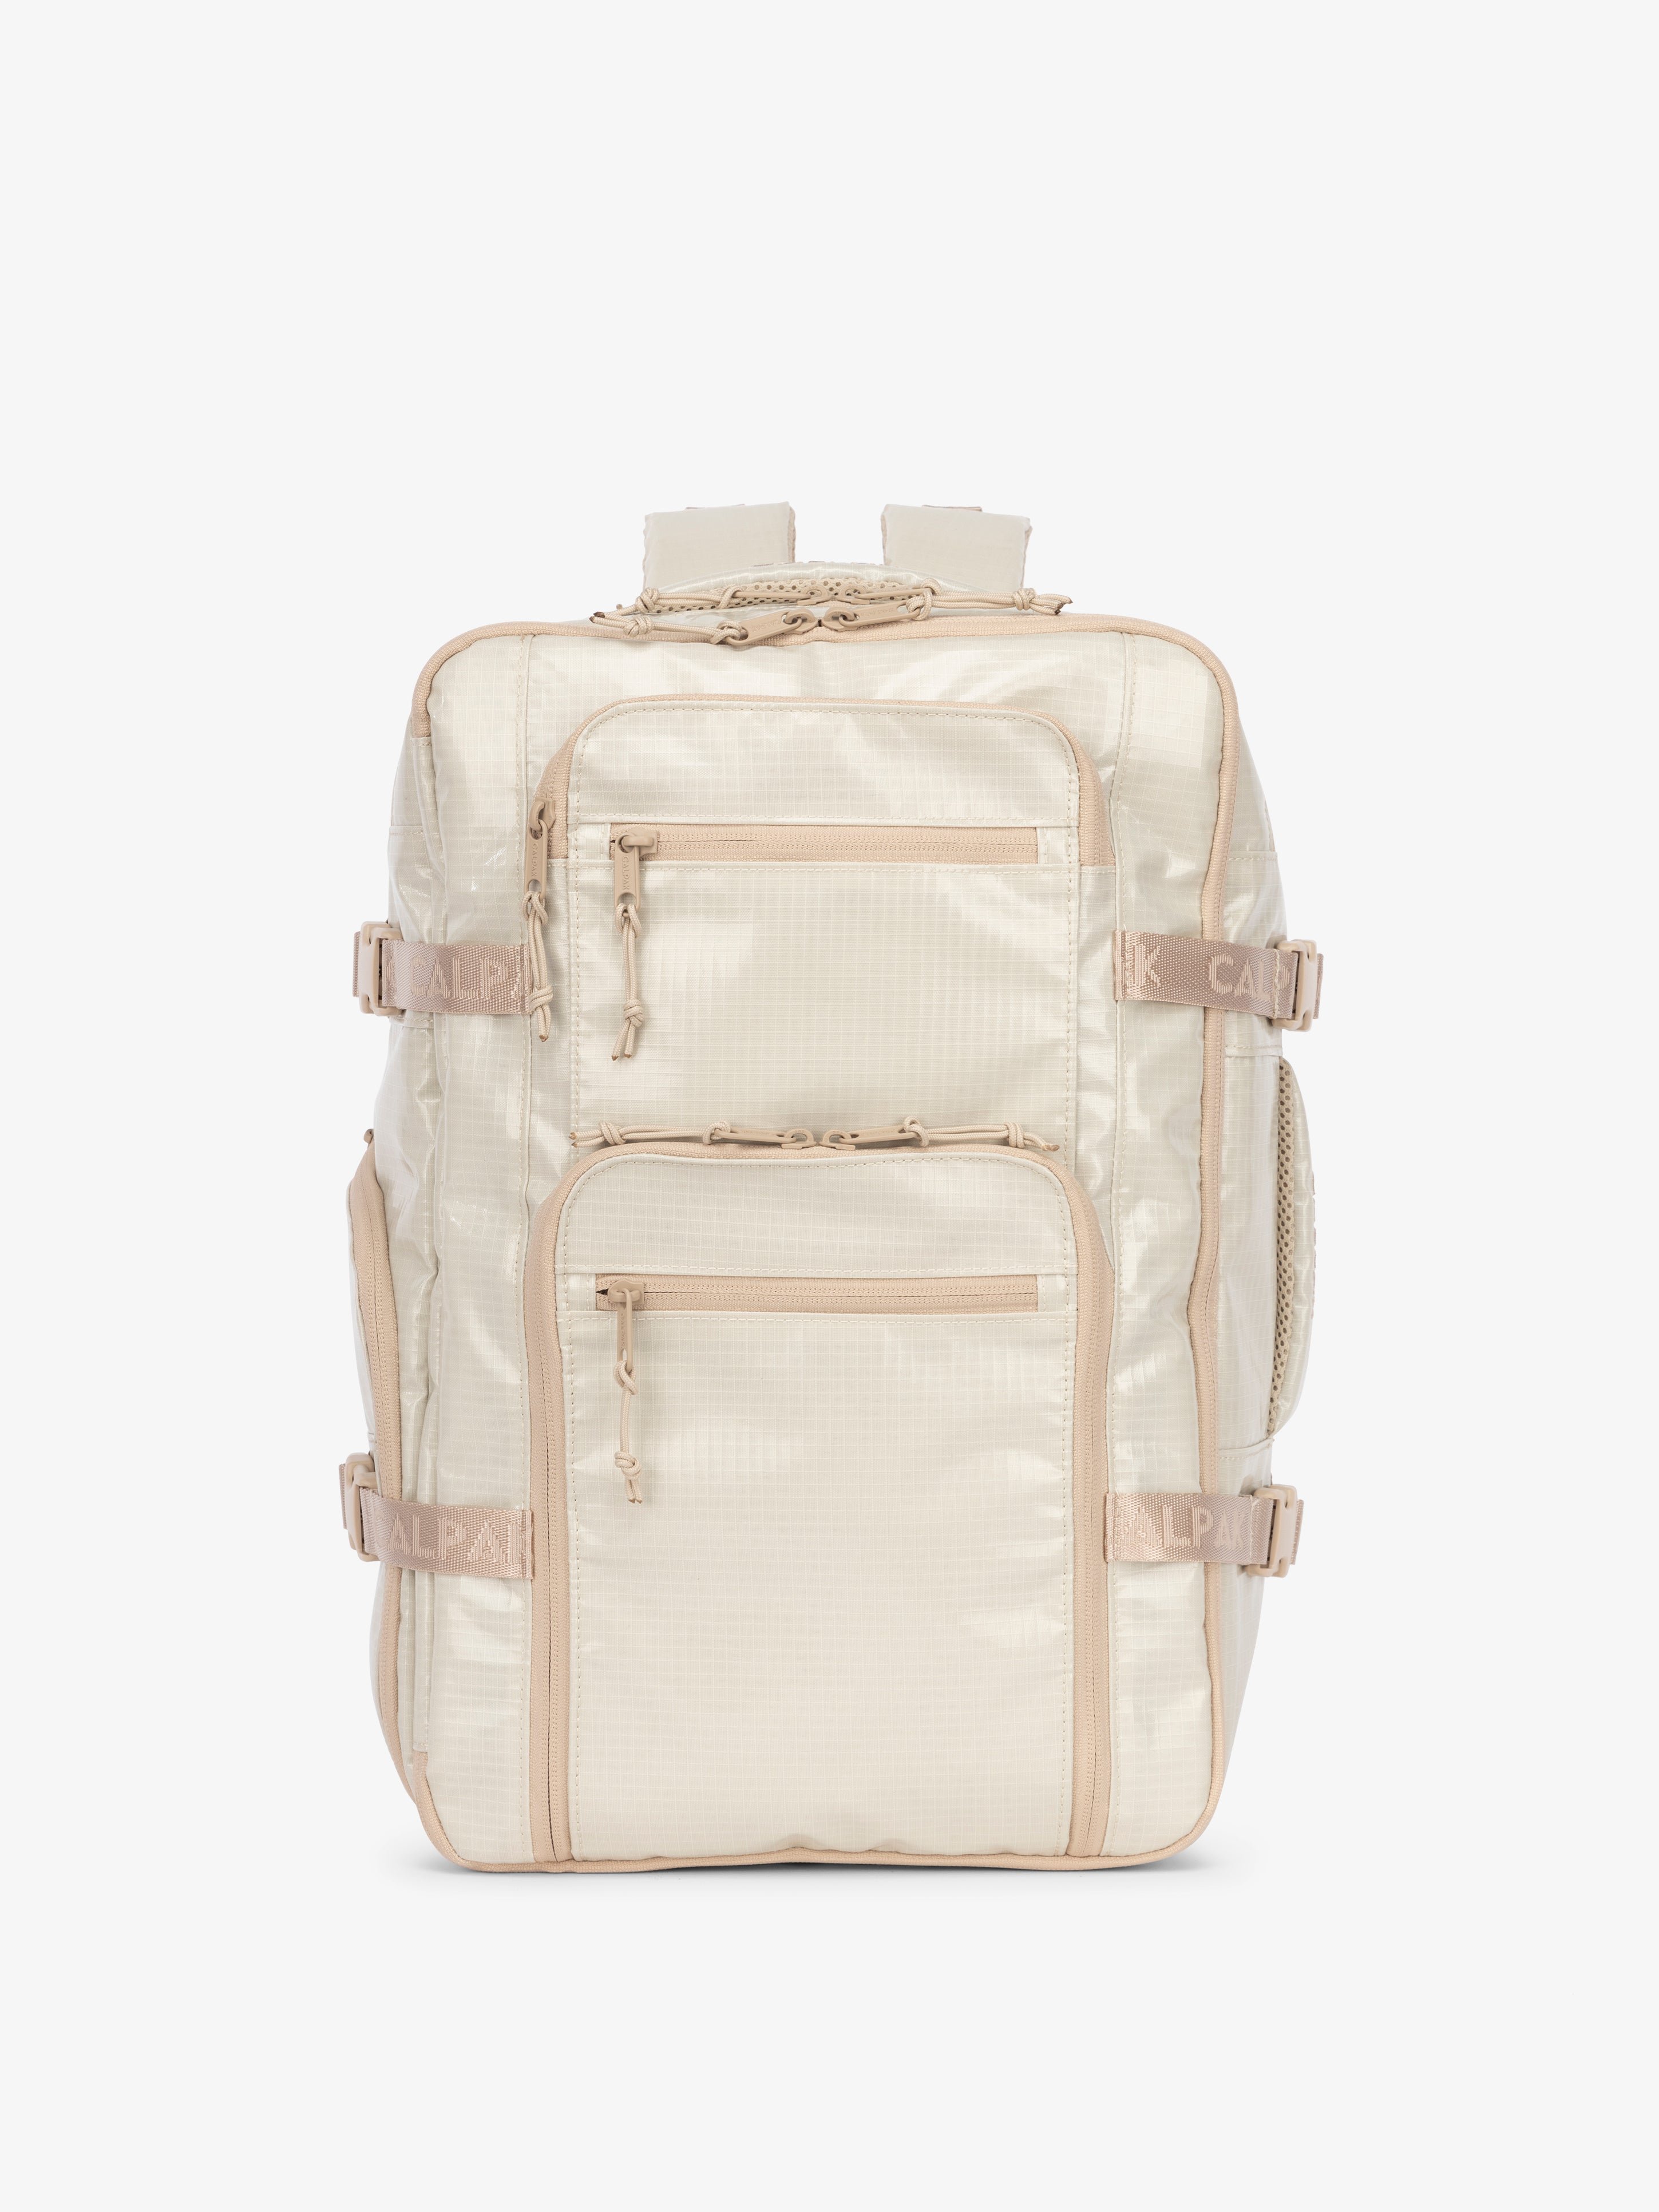 CALPAK Terra 26L laptop backpack duffel in white beige